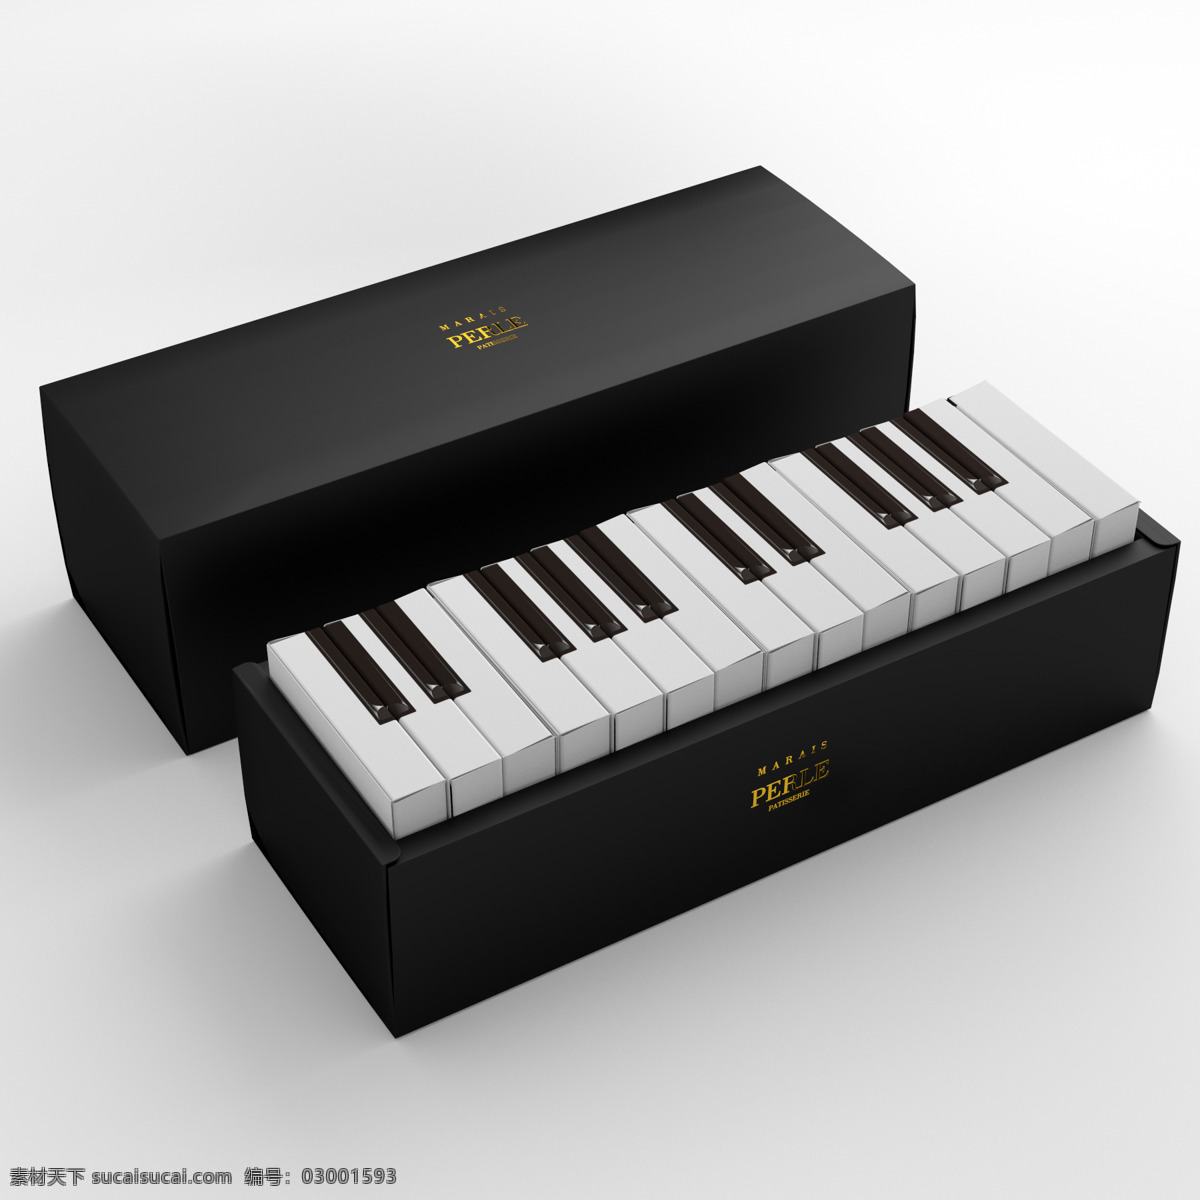 钢琴 蛋糕 包装盒 包装设计 产品设计 蛋糕包装盒 蛋糕盒子 盒子